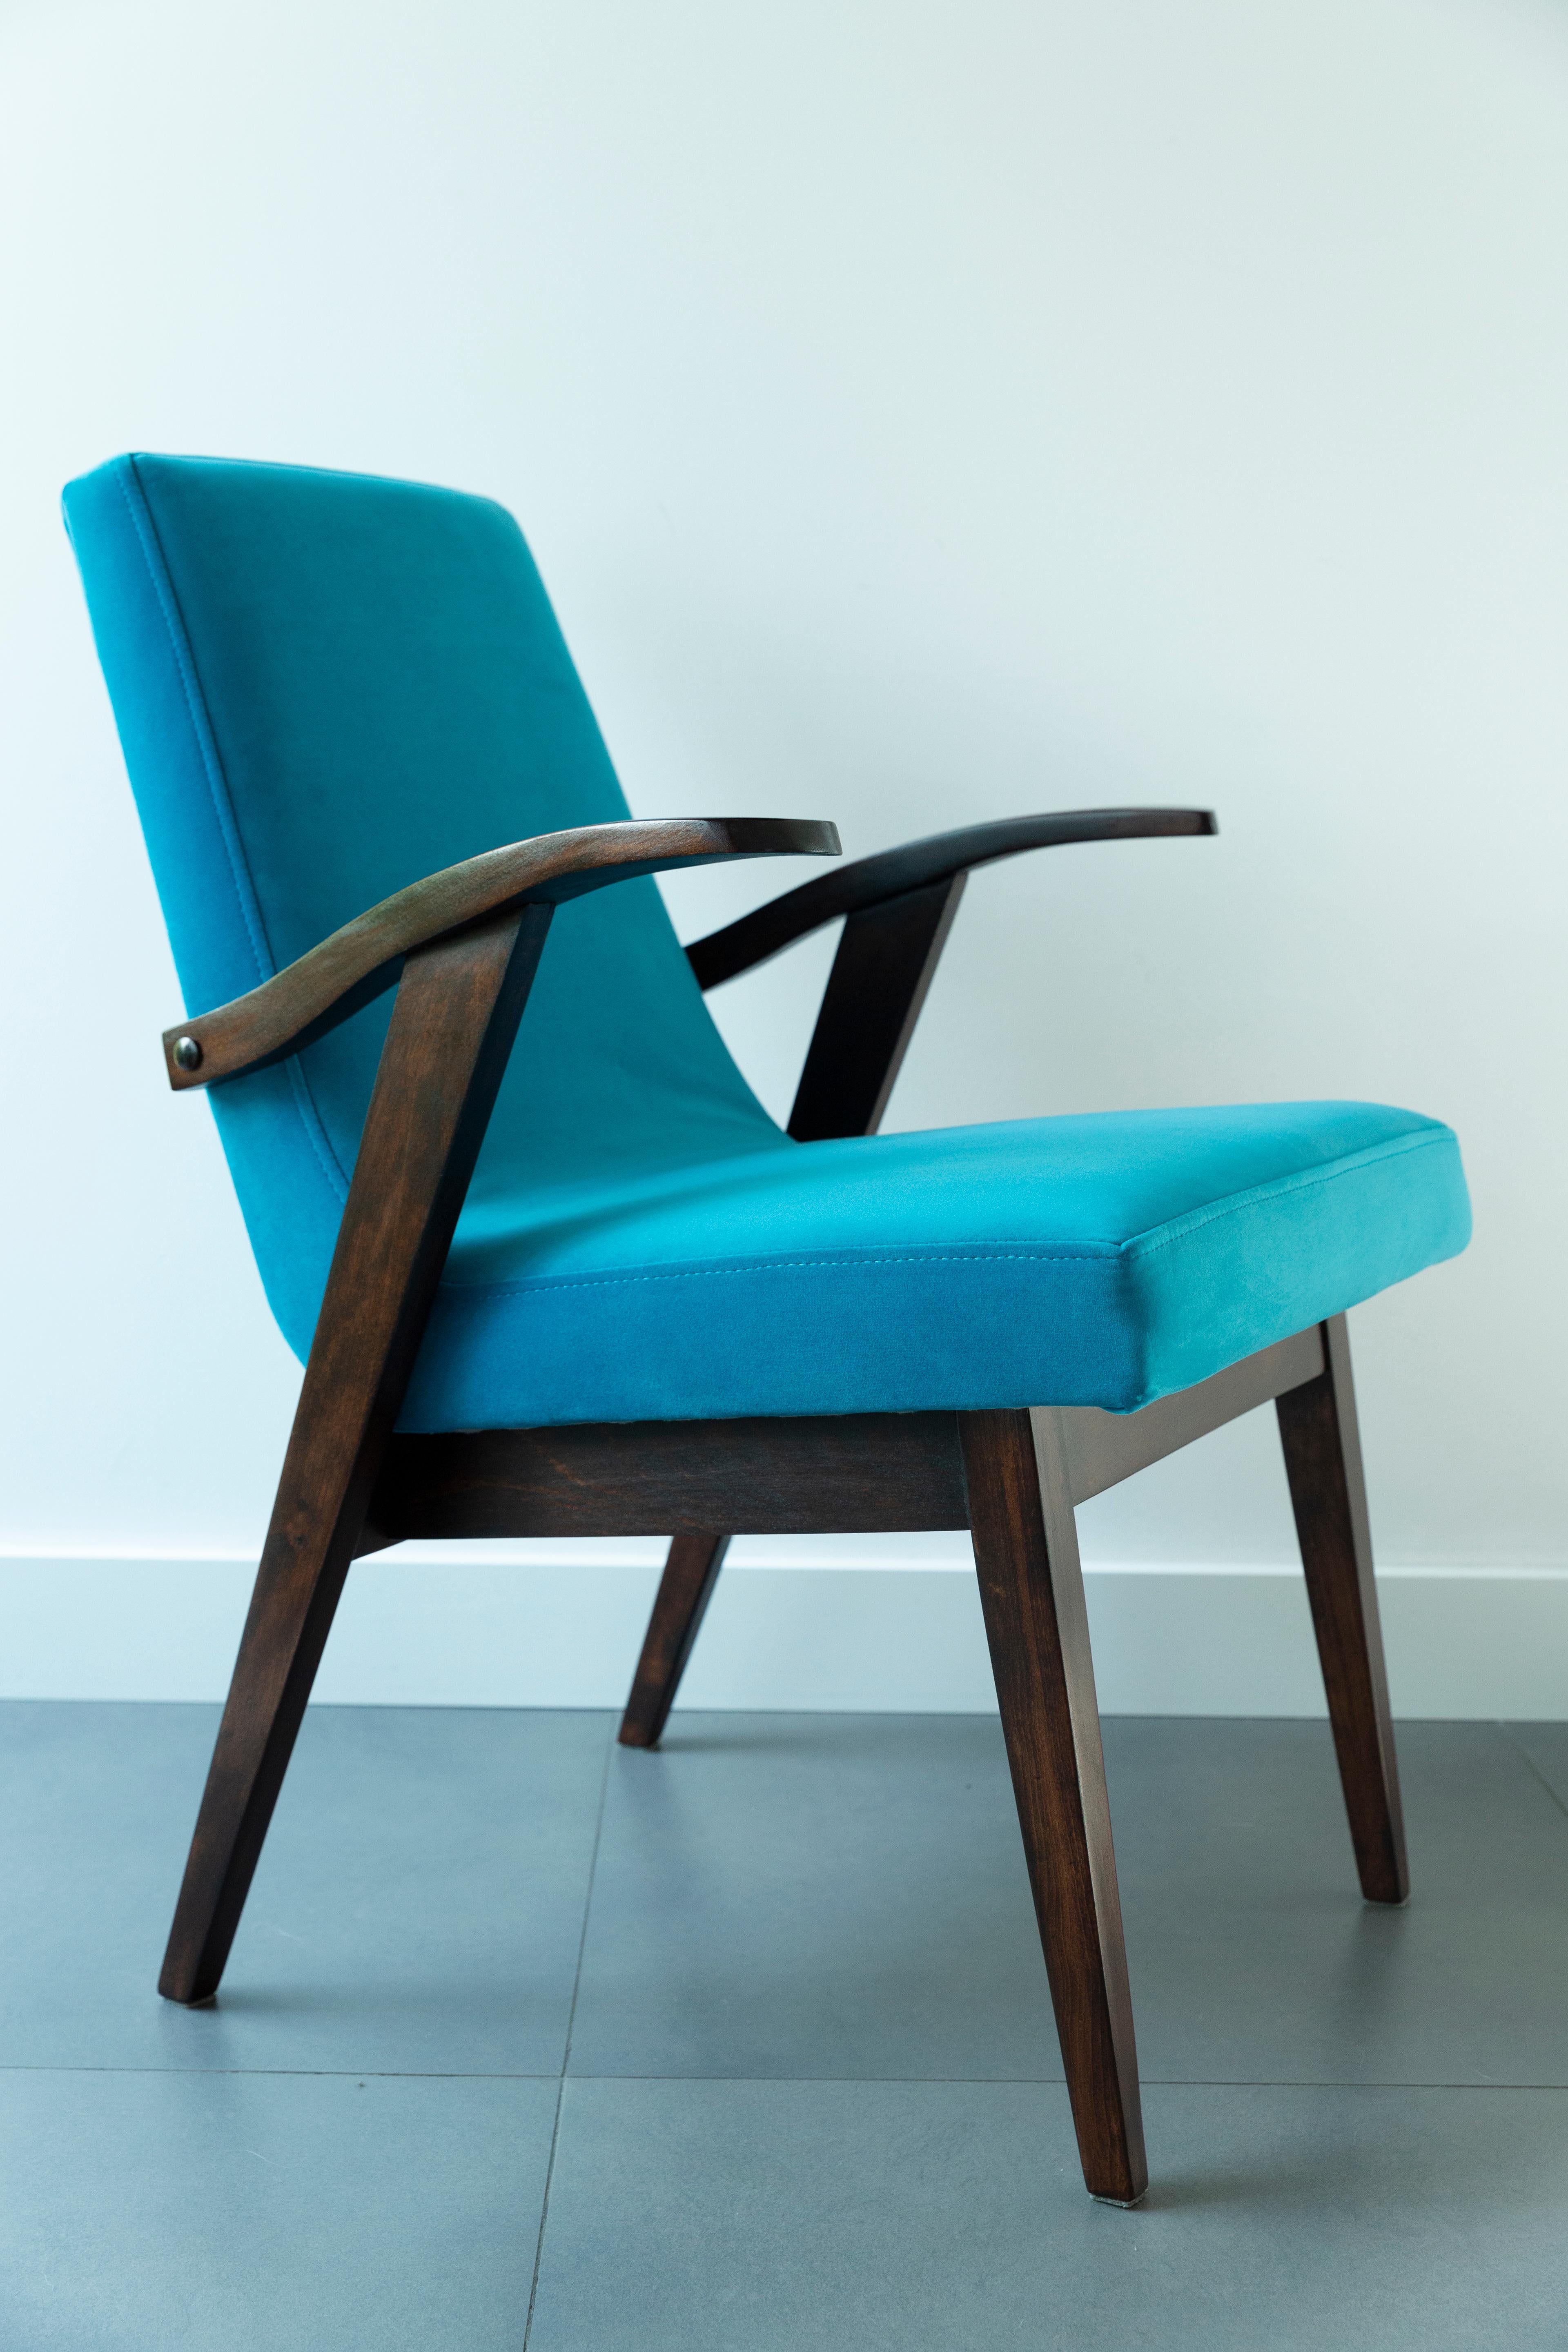 Chaises conçues par Mieczyslaw Puchala. Le bois brun foncé associé à un beau velours bleu lui confère élégance et noblesse. Les chaises ont fait l'objet d'une rénovation complète de la menuiserie et de la tapisserie. Le bois est en excellent état